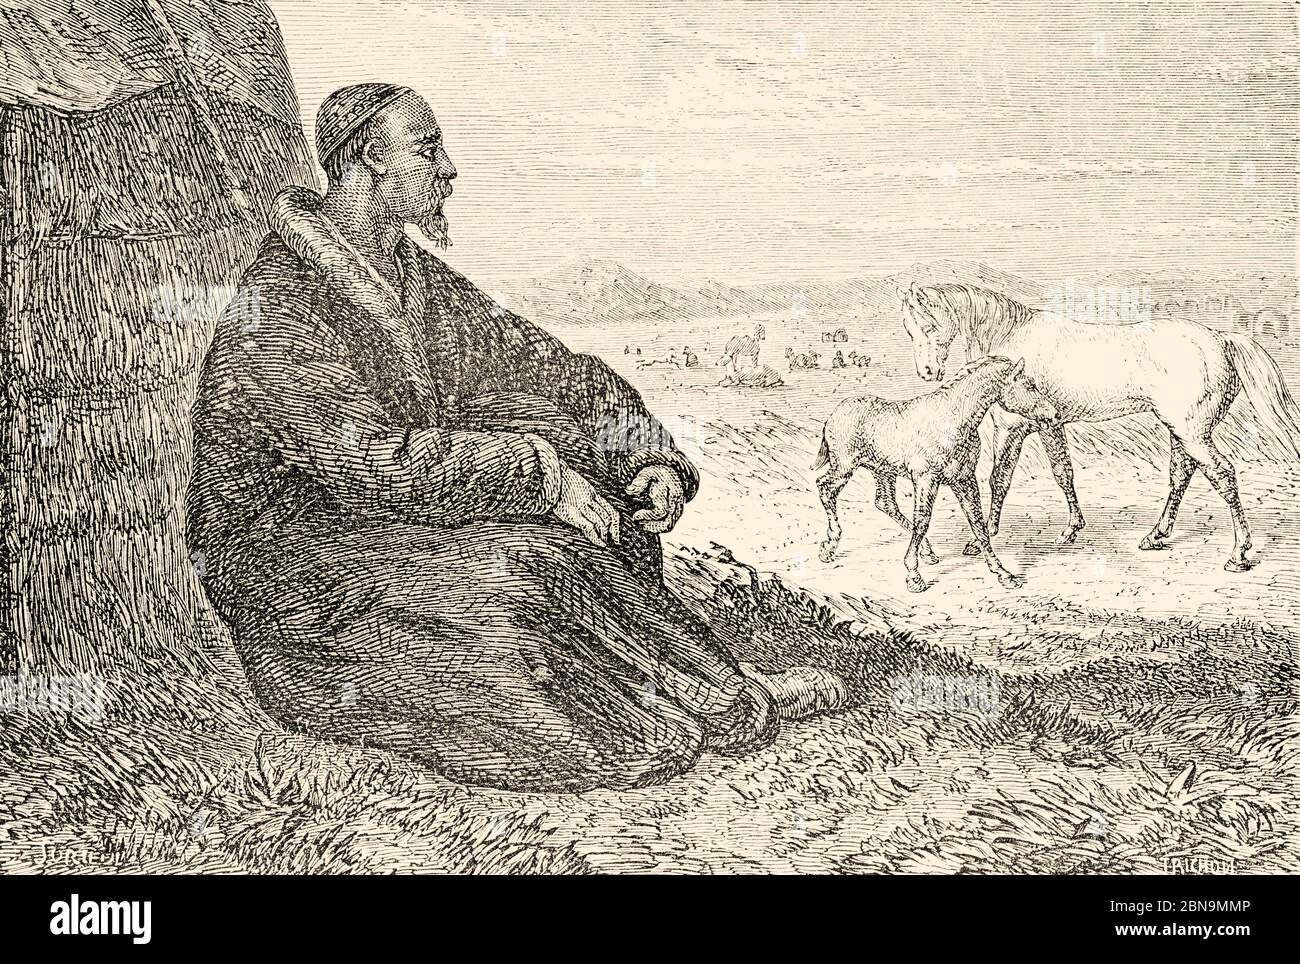 Un berger de village kirghize qui s'occupent de son troupeau d'animaux, Kirghizistan, Asie centrale. Illustration gravée du XIXe siècle, le Tour du monde 1863 Banque D'Images